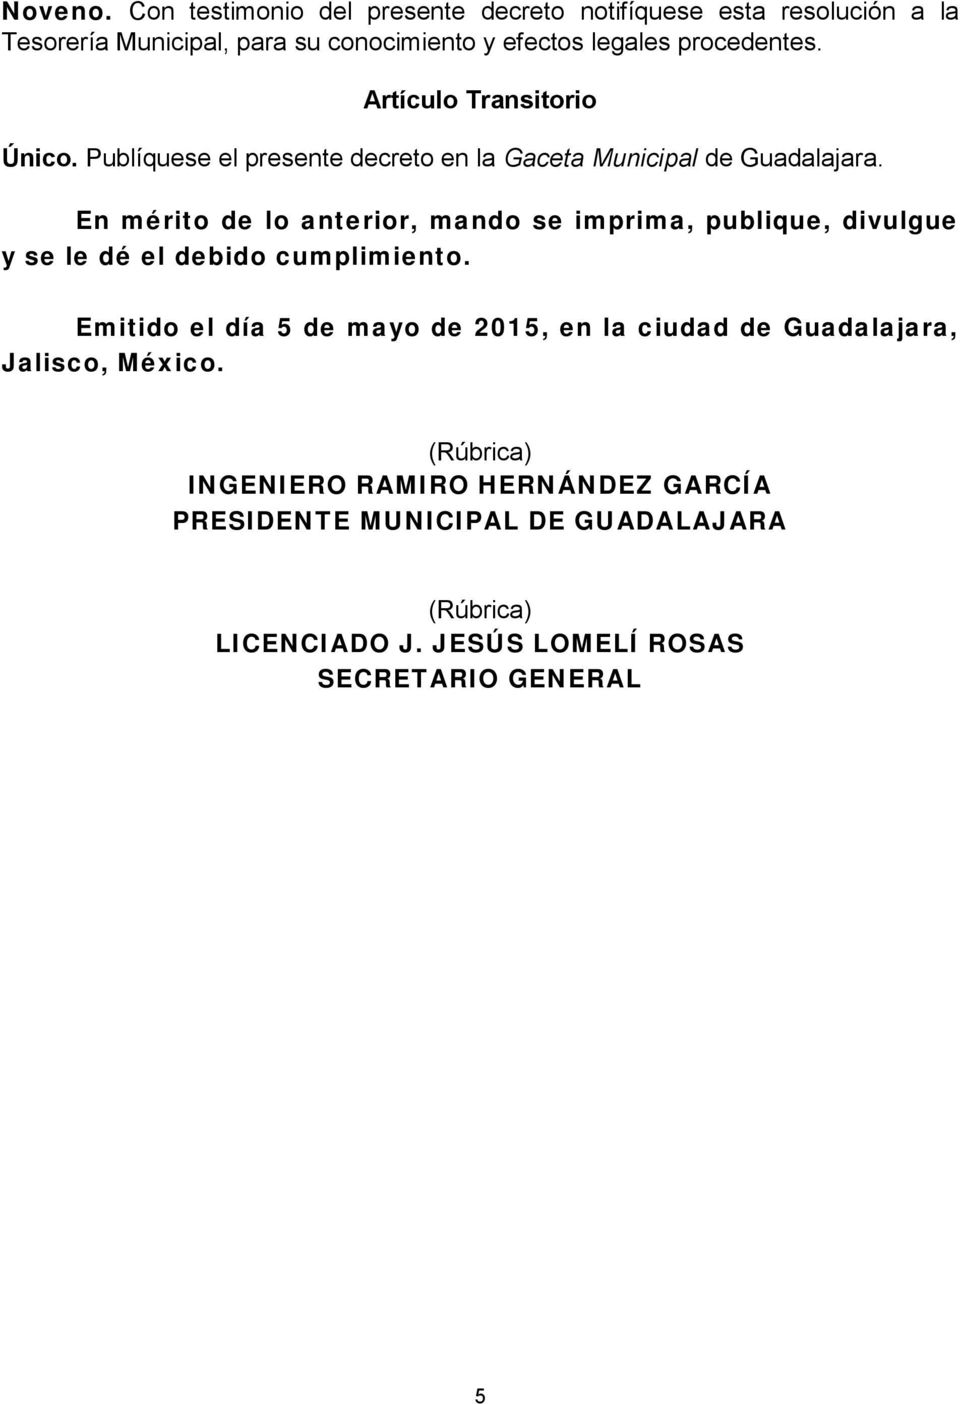 Artículo Transitorio Único. Publíquese el presente decreto en la Gaceta Municipal de Guadalajara.